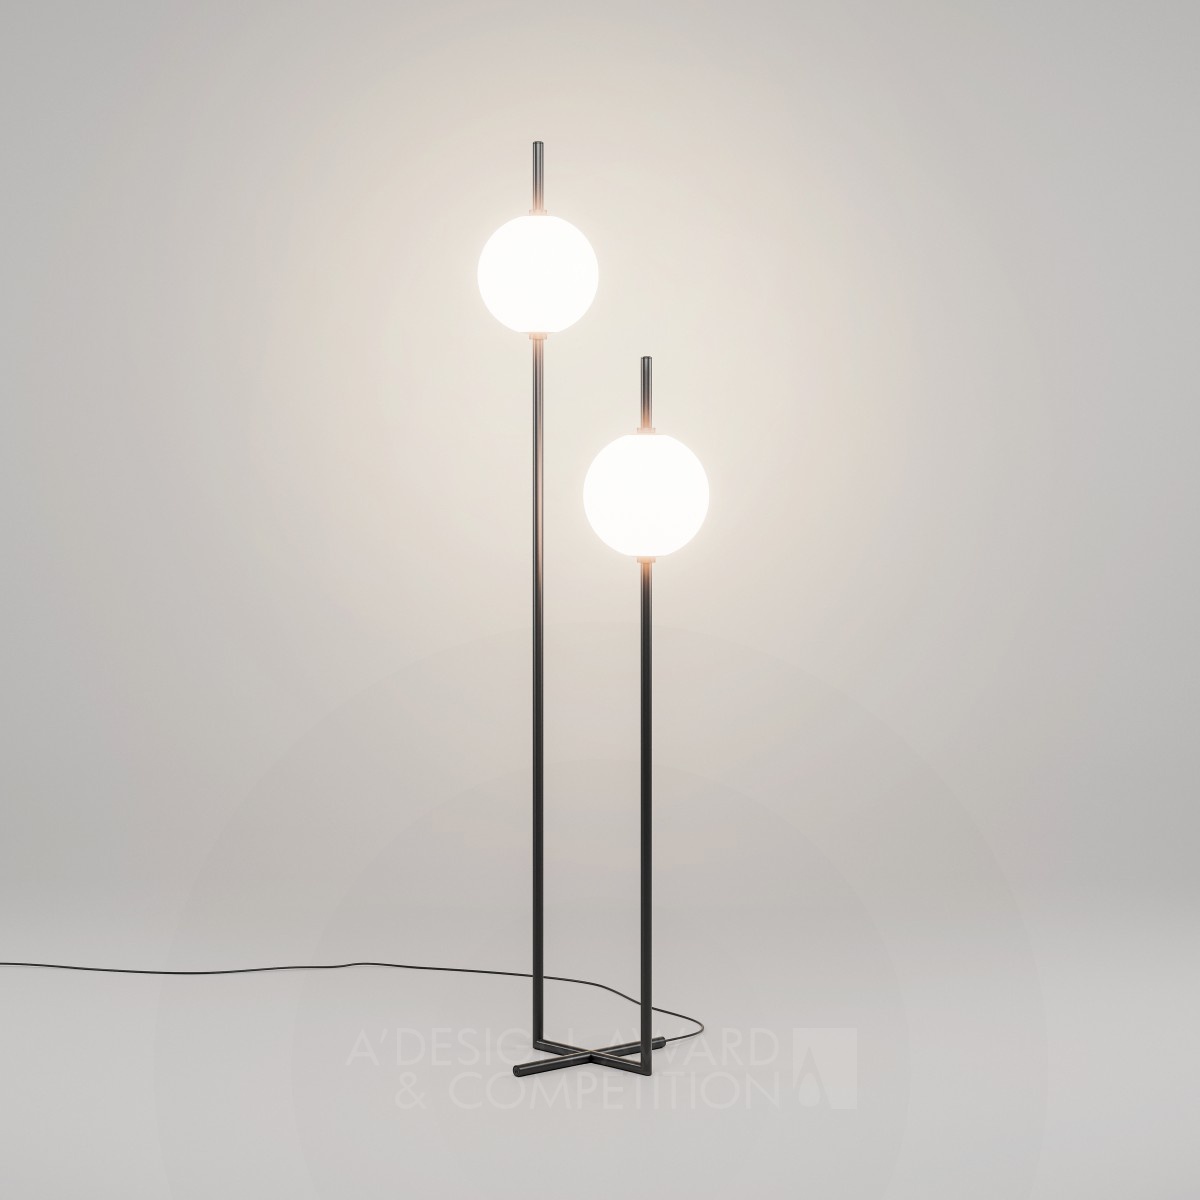 Светильник "Шестое чувство" от Алексея Данилина: Инновации в дизайне освещения